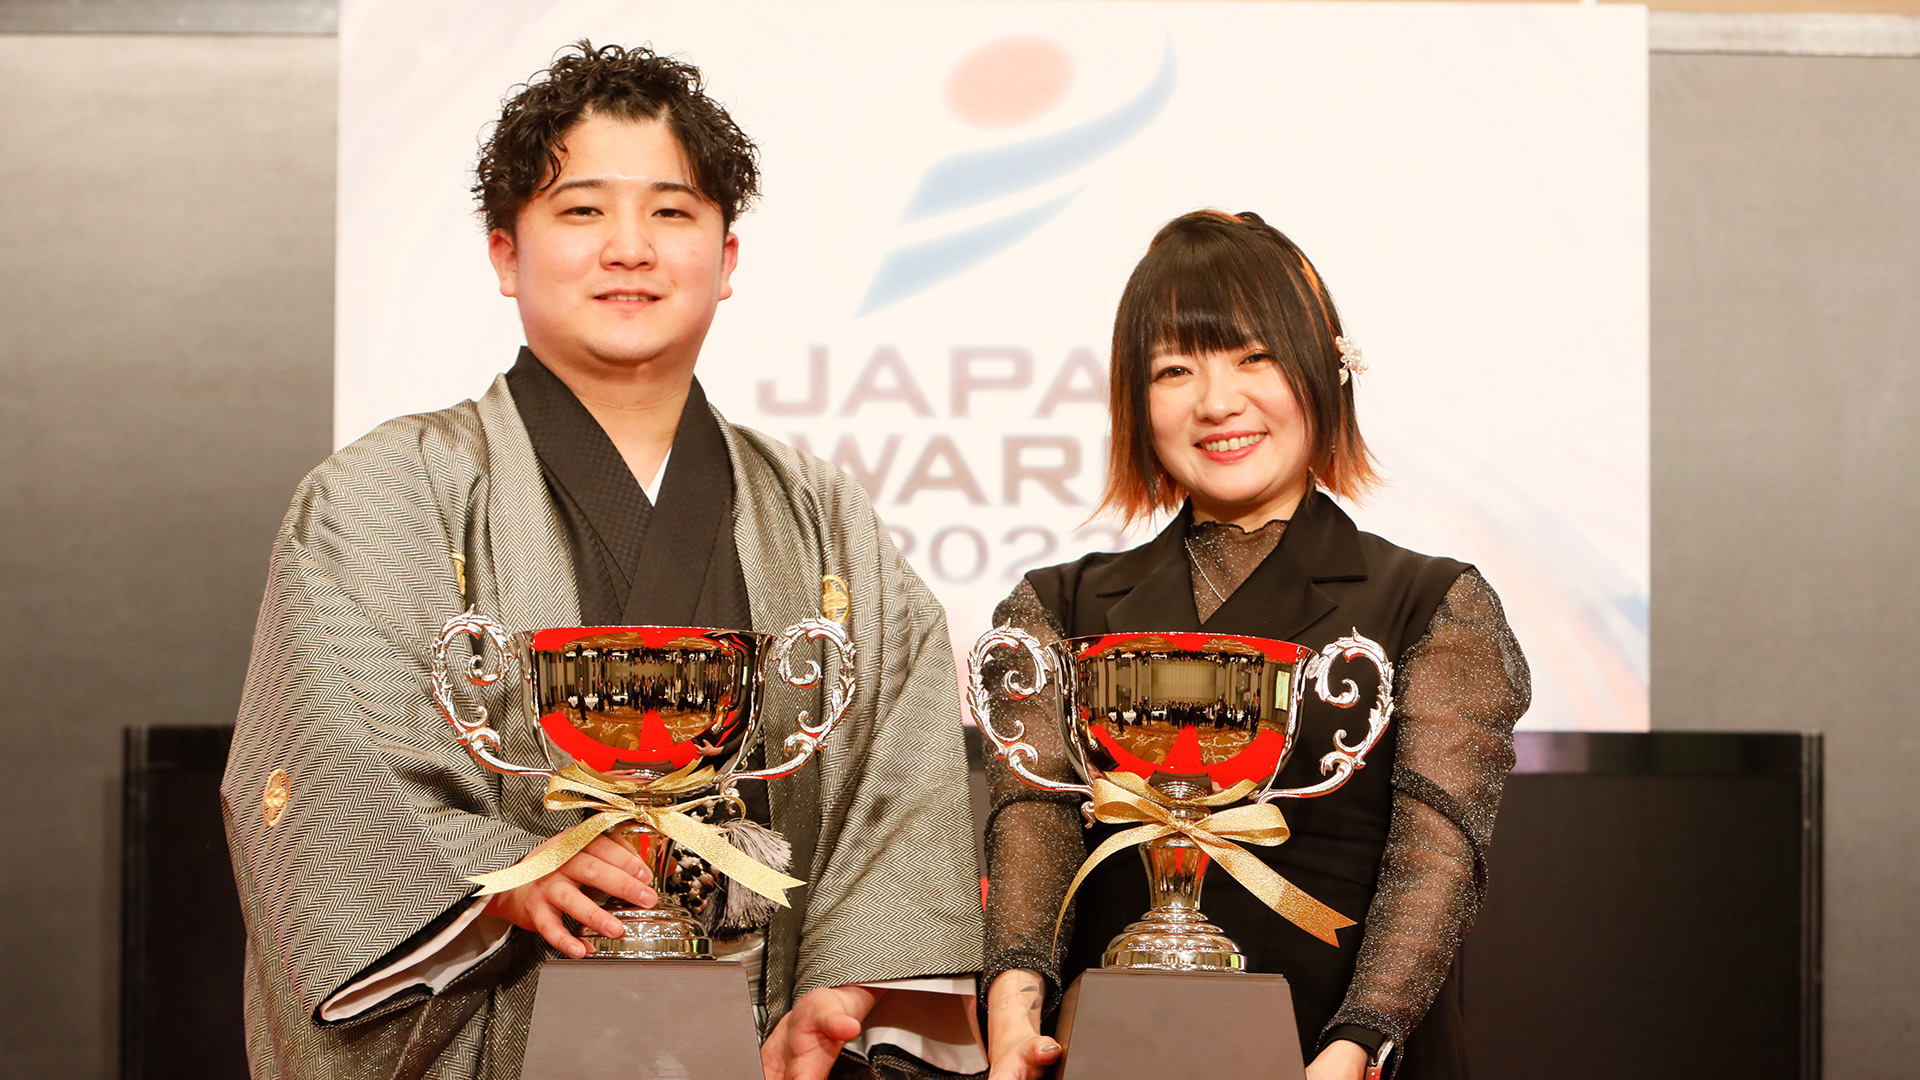 JAPAN AWARDS